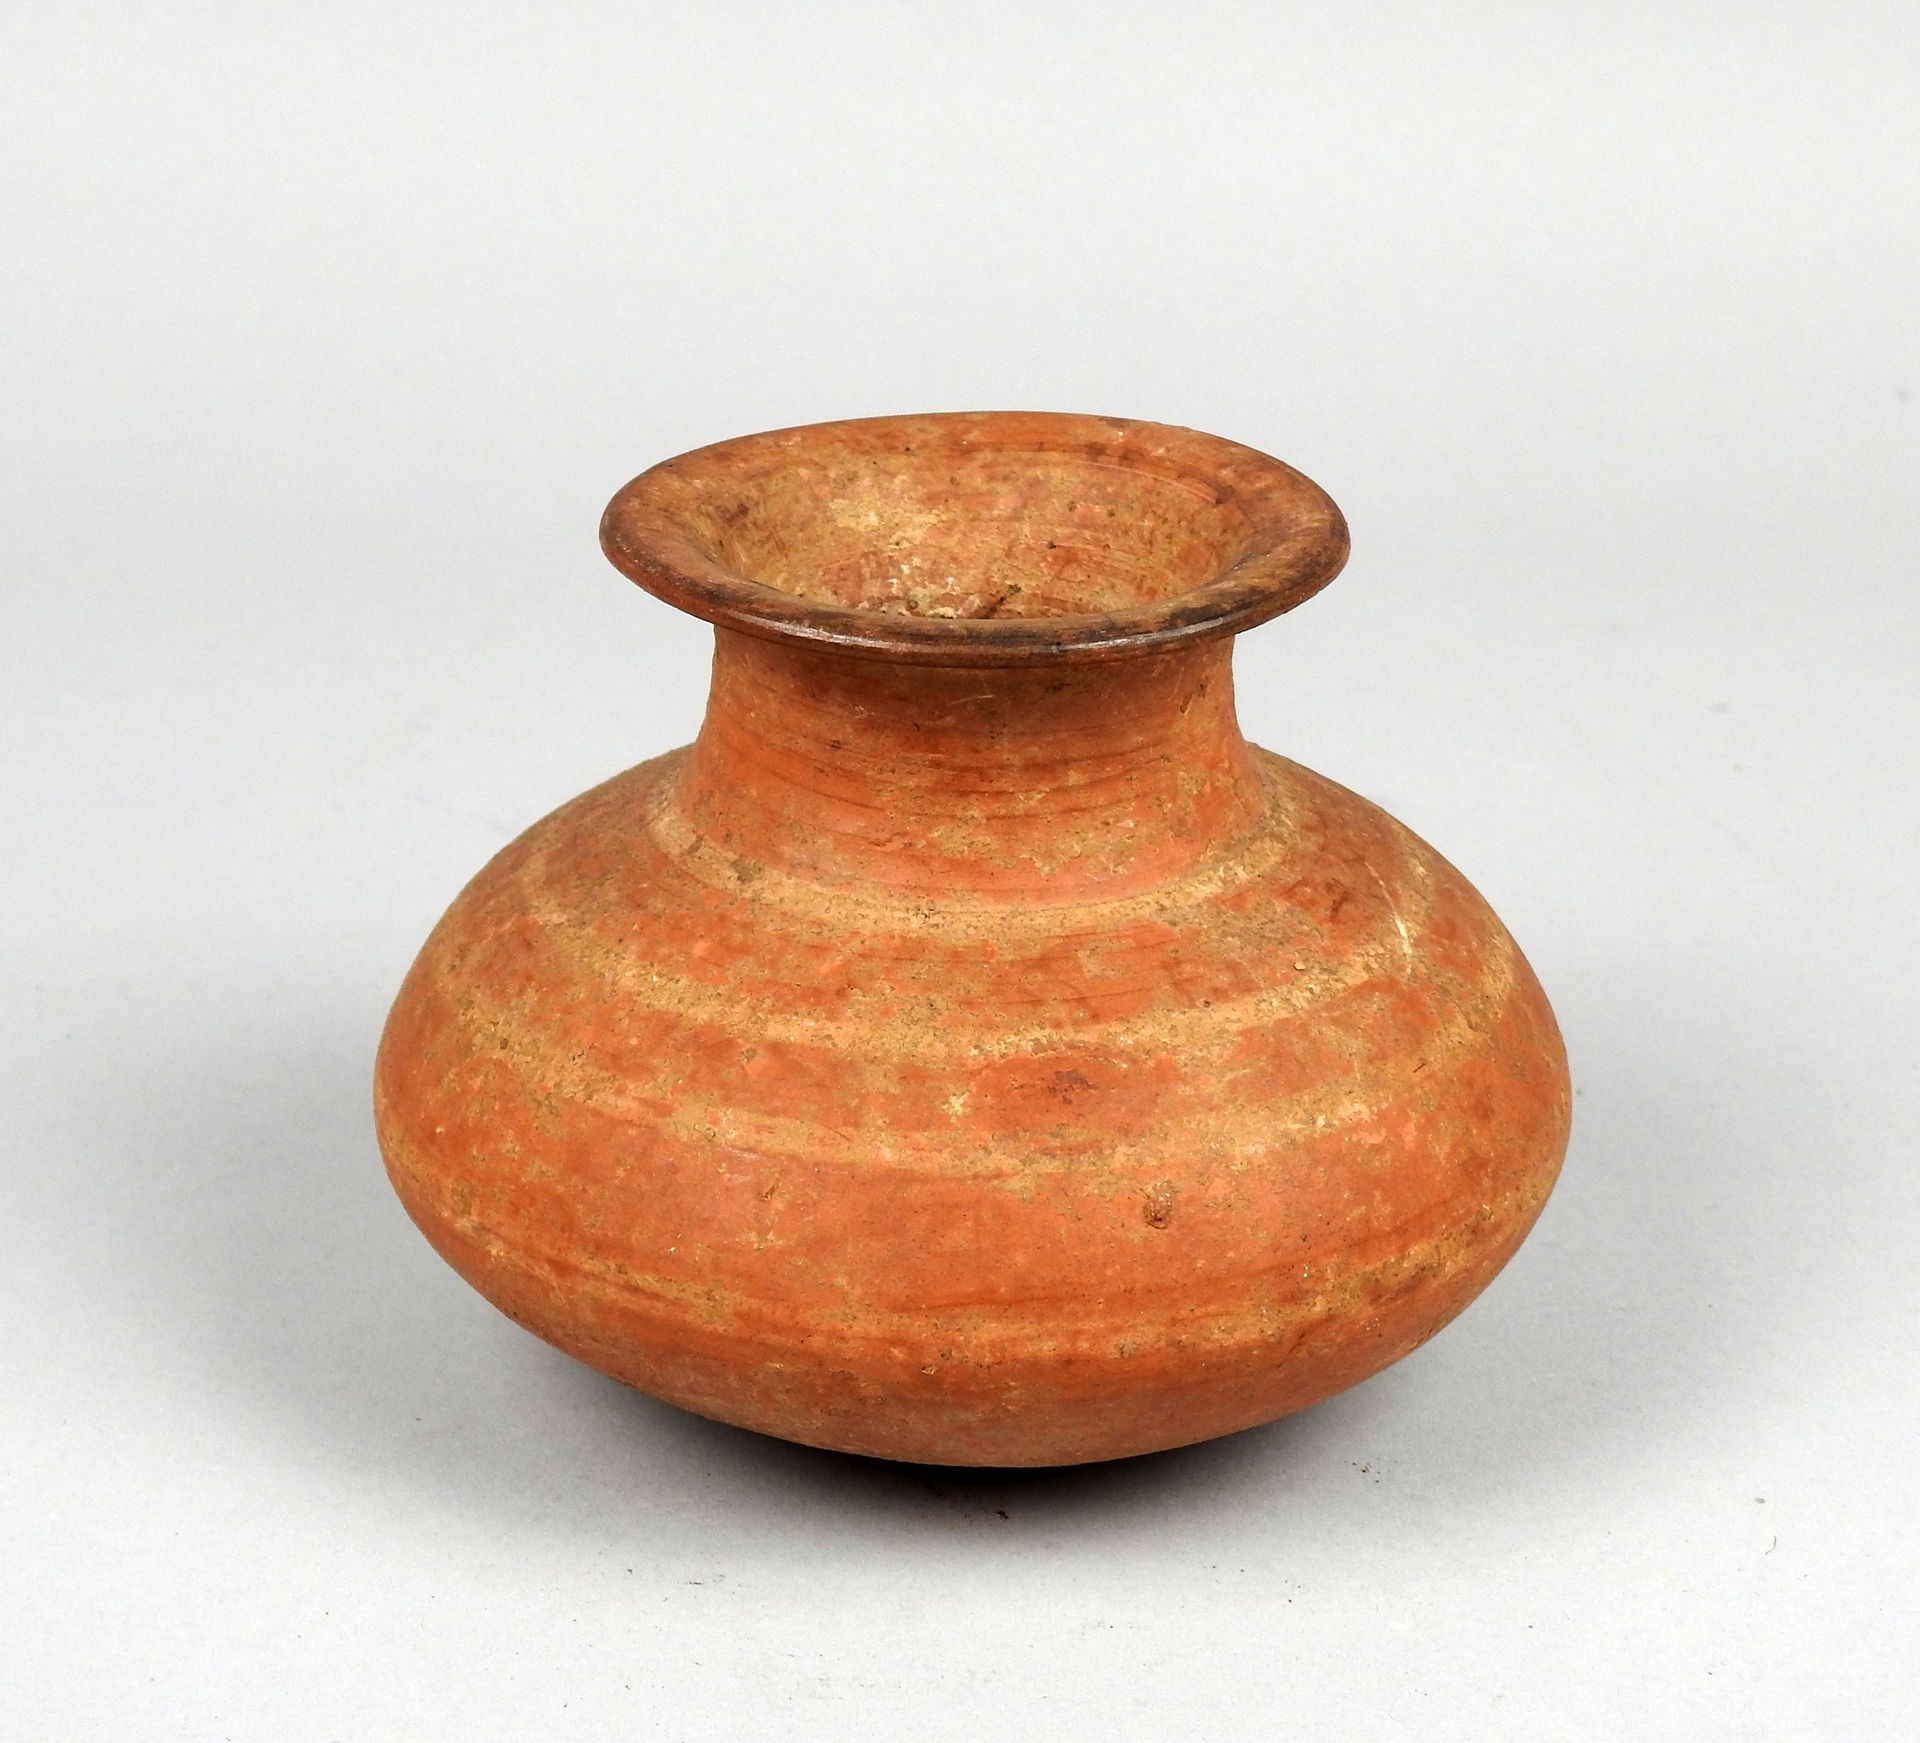 Null 饰有红色带子的截顶锥状花瓶

陶器11厘米

古代时期可能是希腊或塞浦路斯